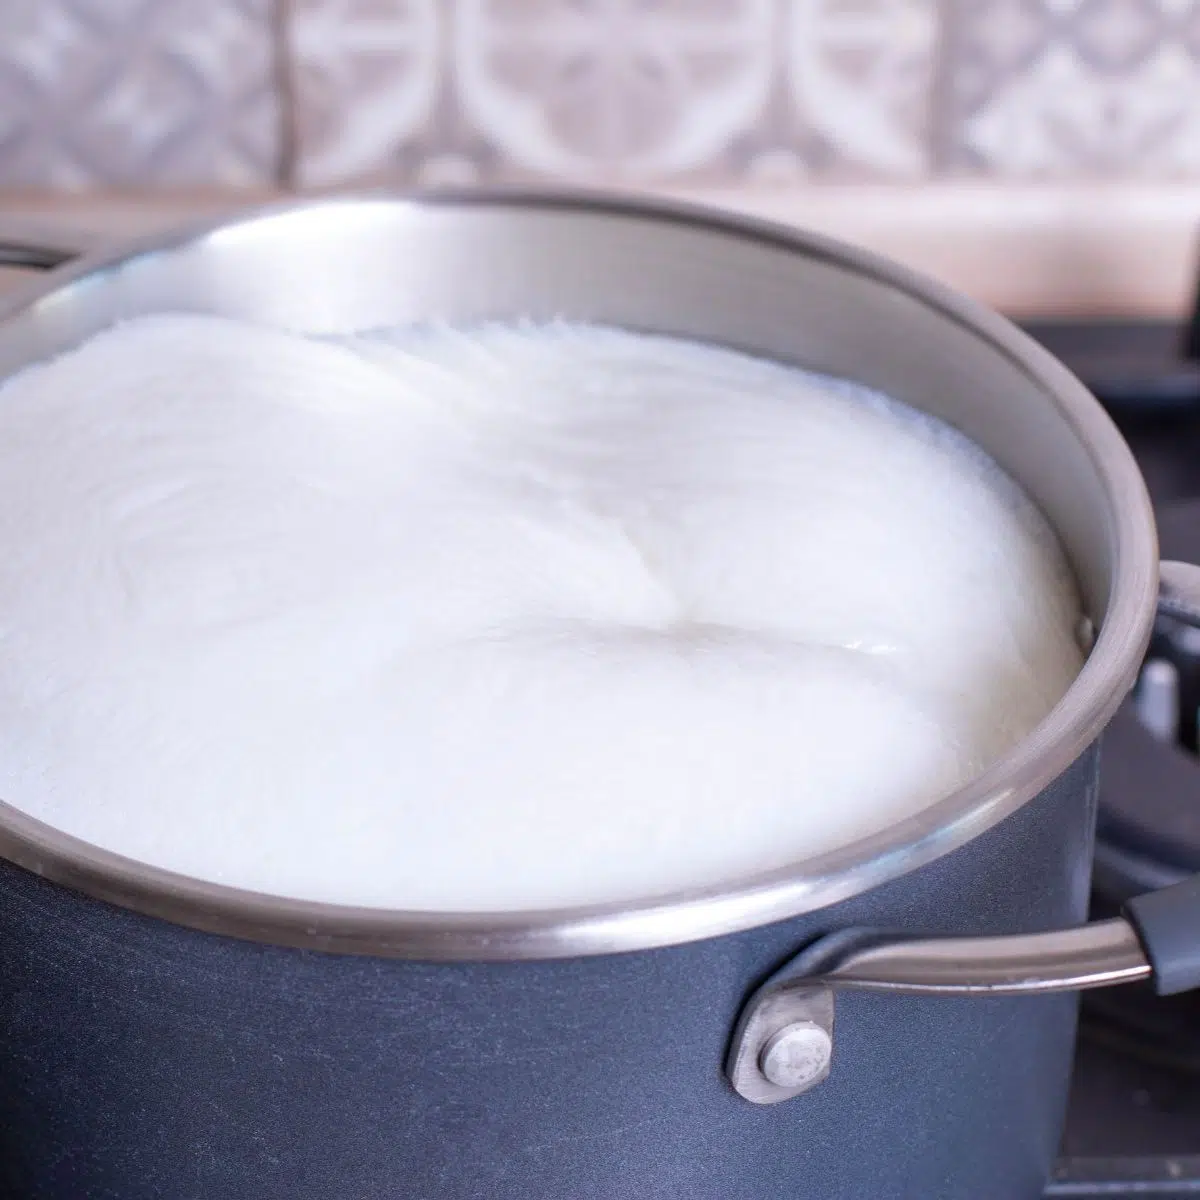 Cómo escaldar la leche rápidamente para puré de papas con leche en una cacerola.